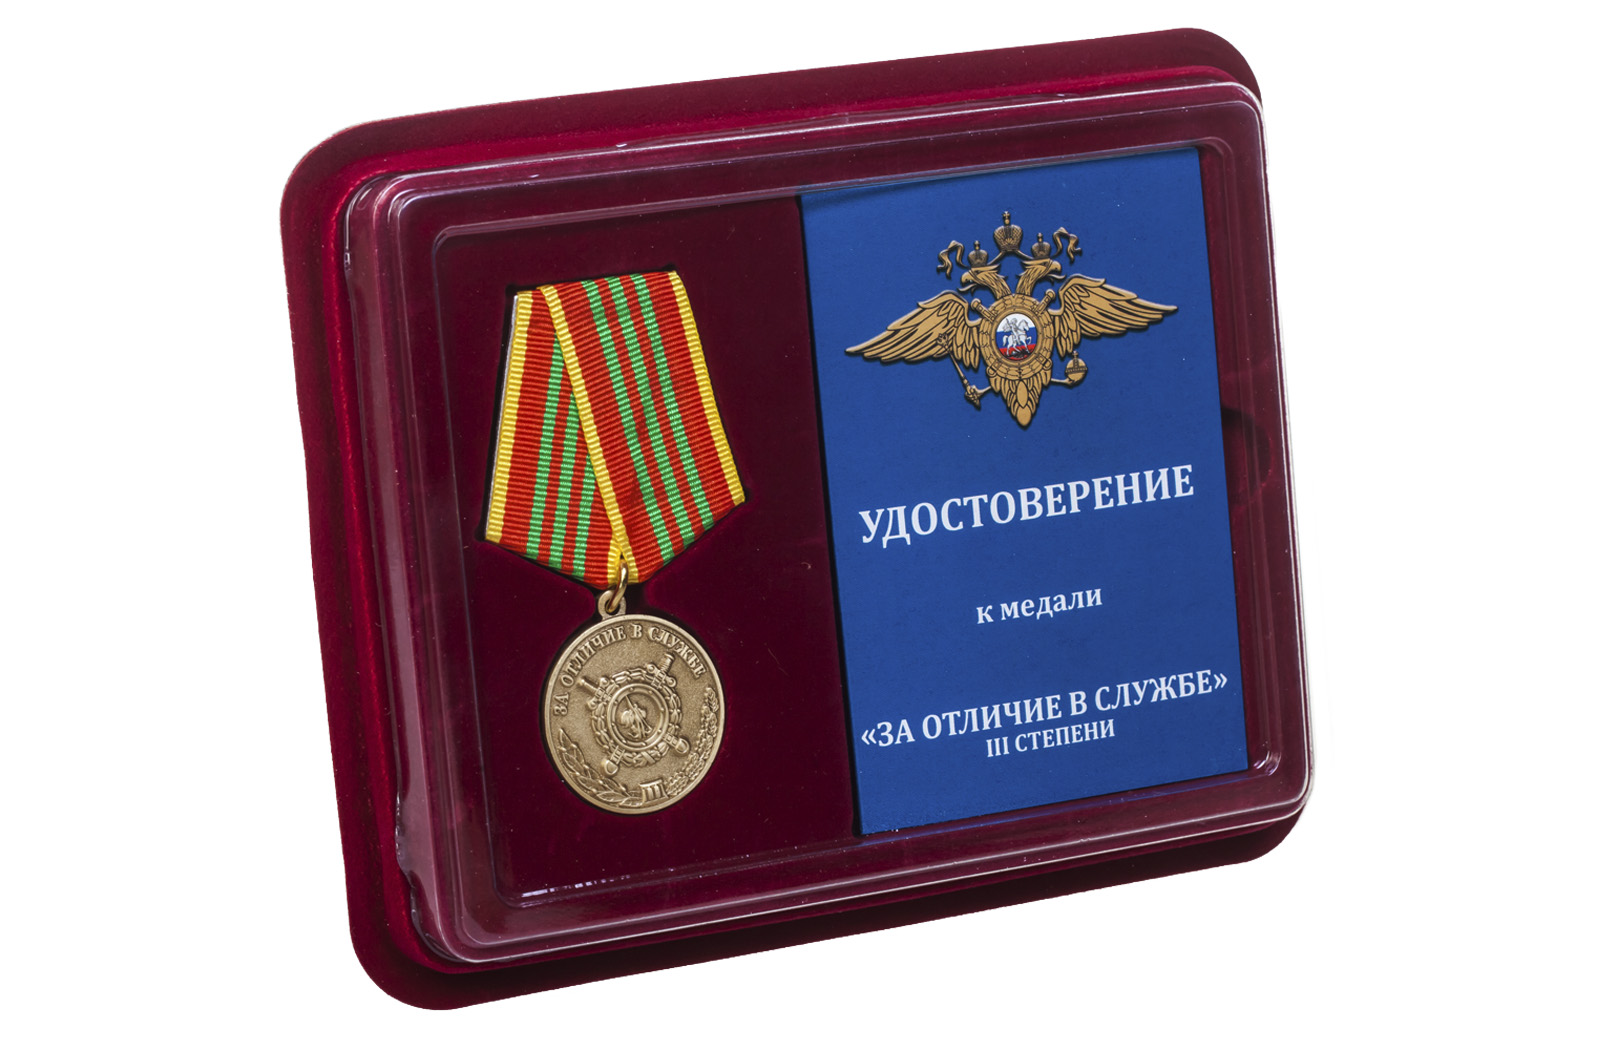 Медаль МВД РФ "За отличие в службе" 3 степени 